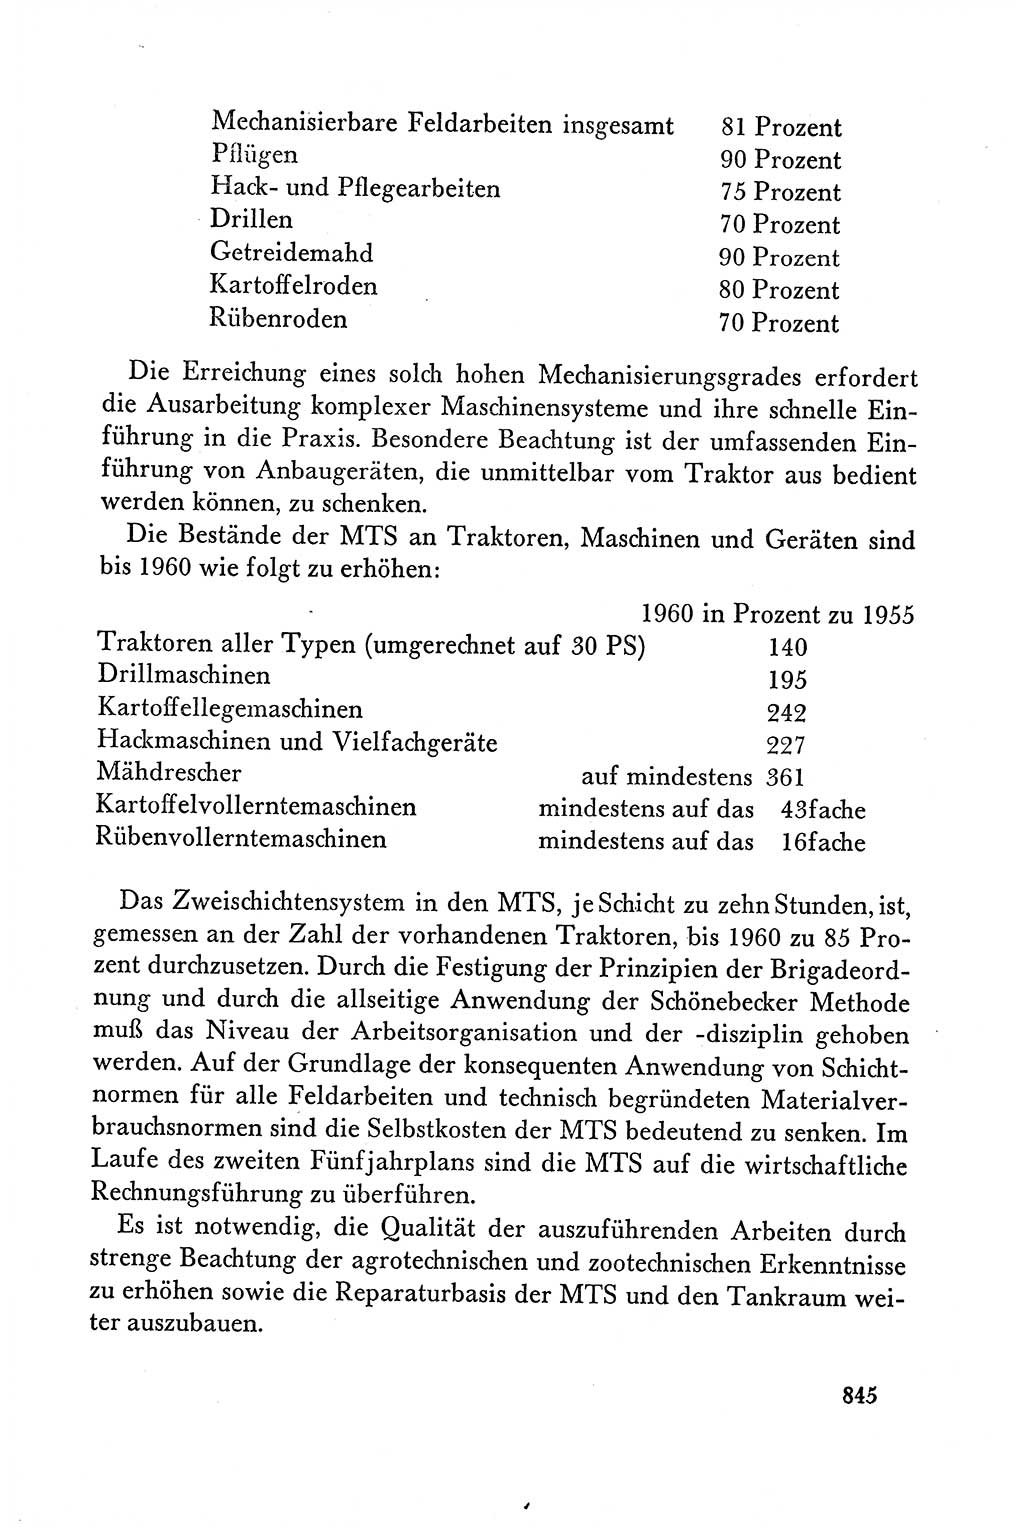 Dokumente der Sozialistischen Einheitspartei Deutschlands (SED) [Deutsche Demokratische Republik (DDR)] 1958-1959, Seite 845 (Dok. SED DDR 1958-1959, S. 845)